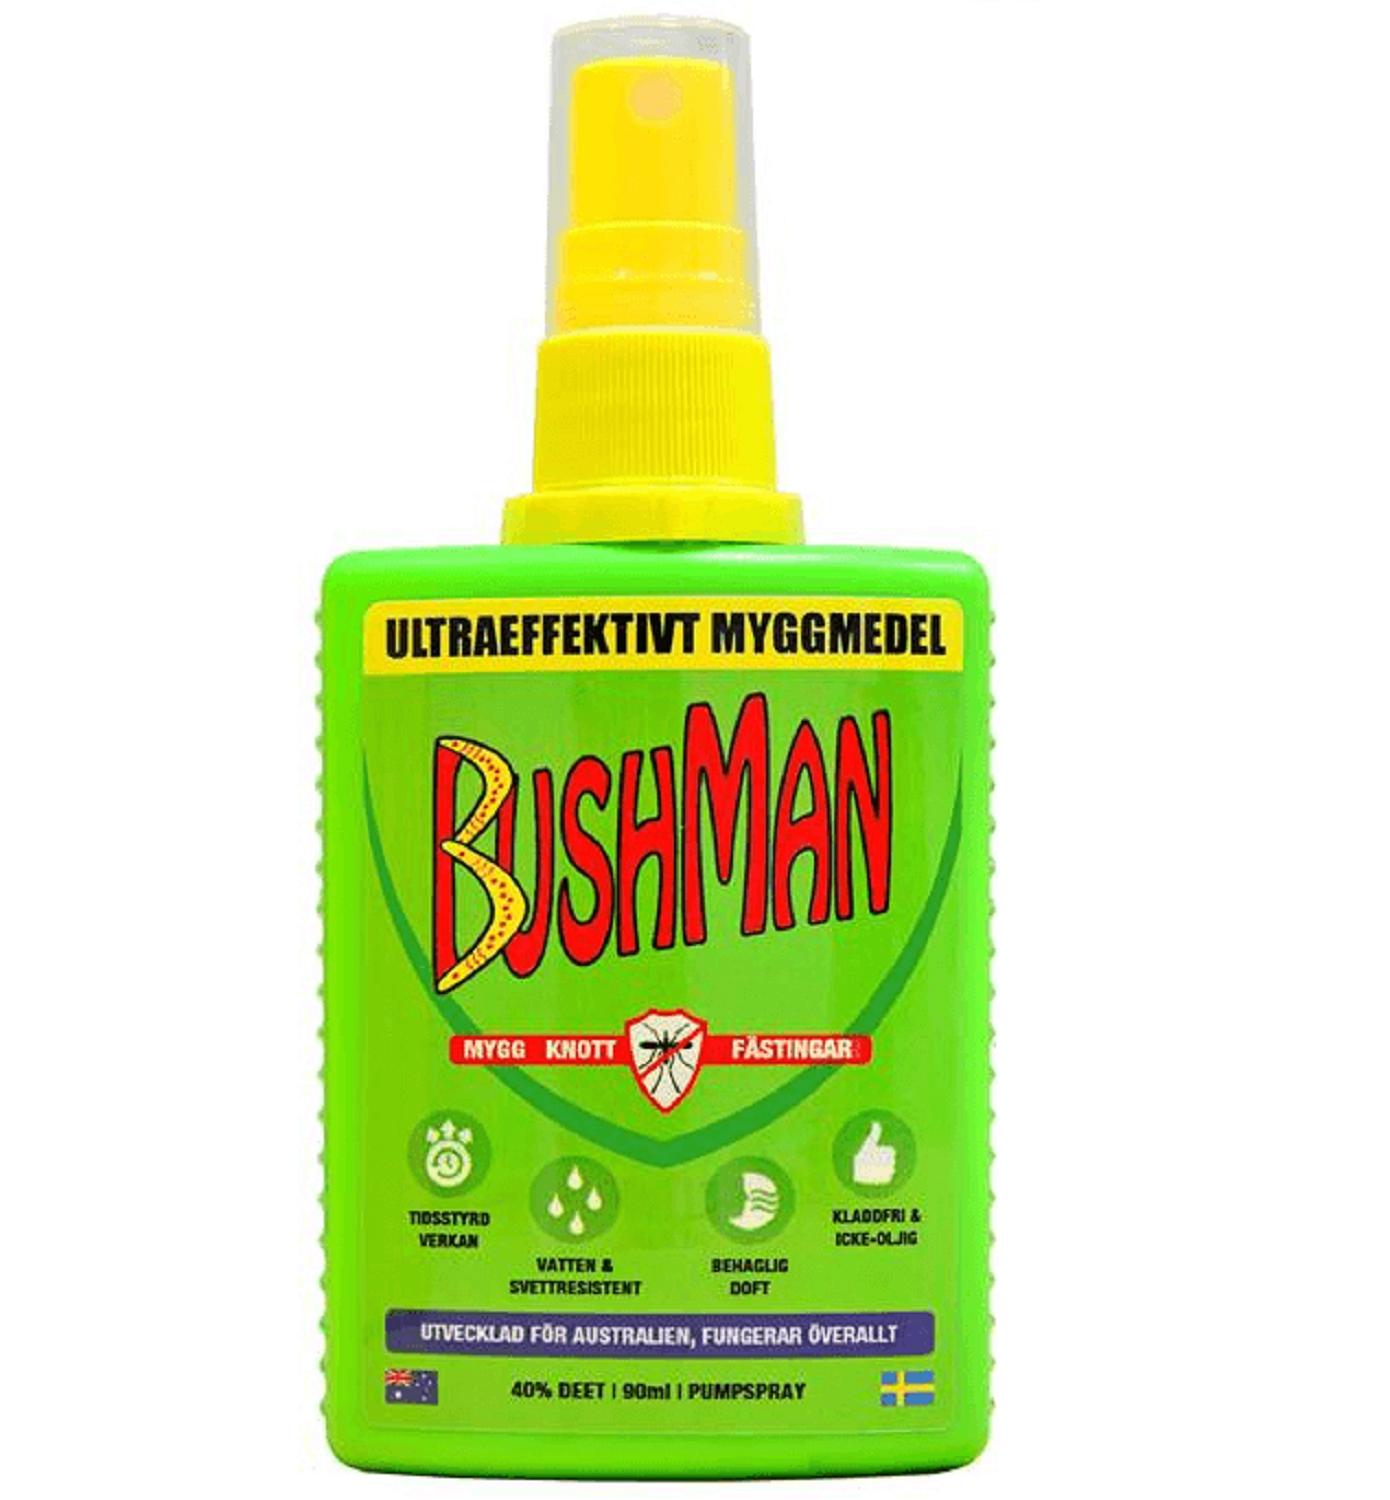 BUSHMAN Spray, 90 ml